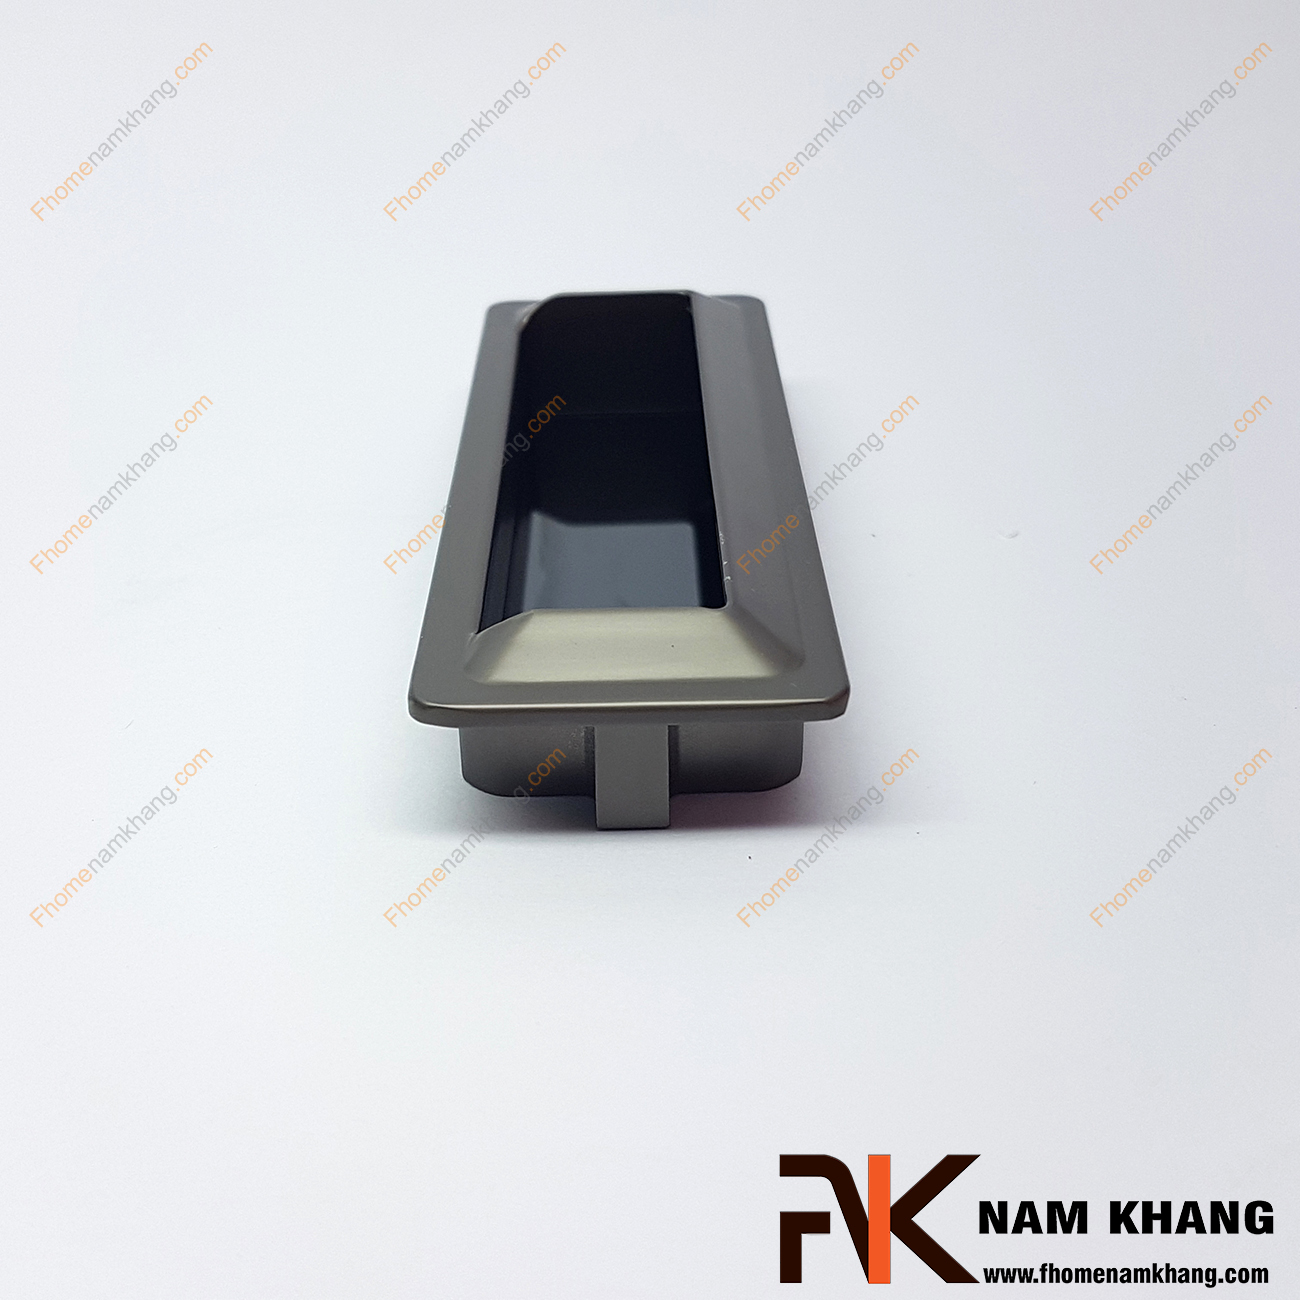 Tay nắm âm tủ màu xám NK301-96D là loại tay nắm chuyên dùng cho các loại tủ đặt ở những nơi có không gian hạn chế hoặc dùng để nâng cao tính thẫm mỹ của sản phẩm